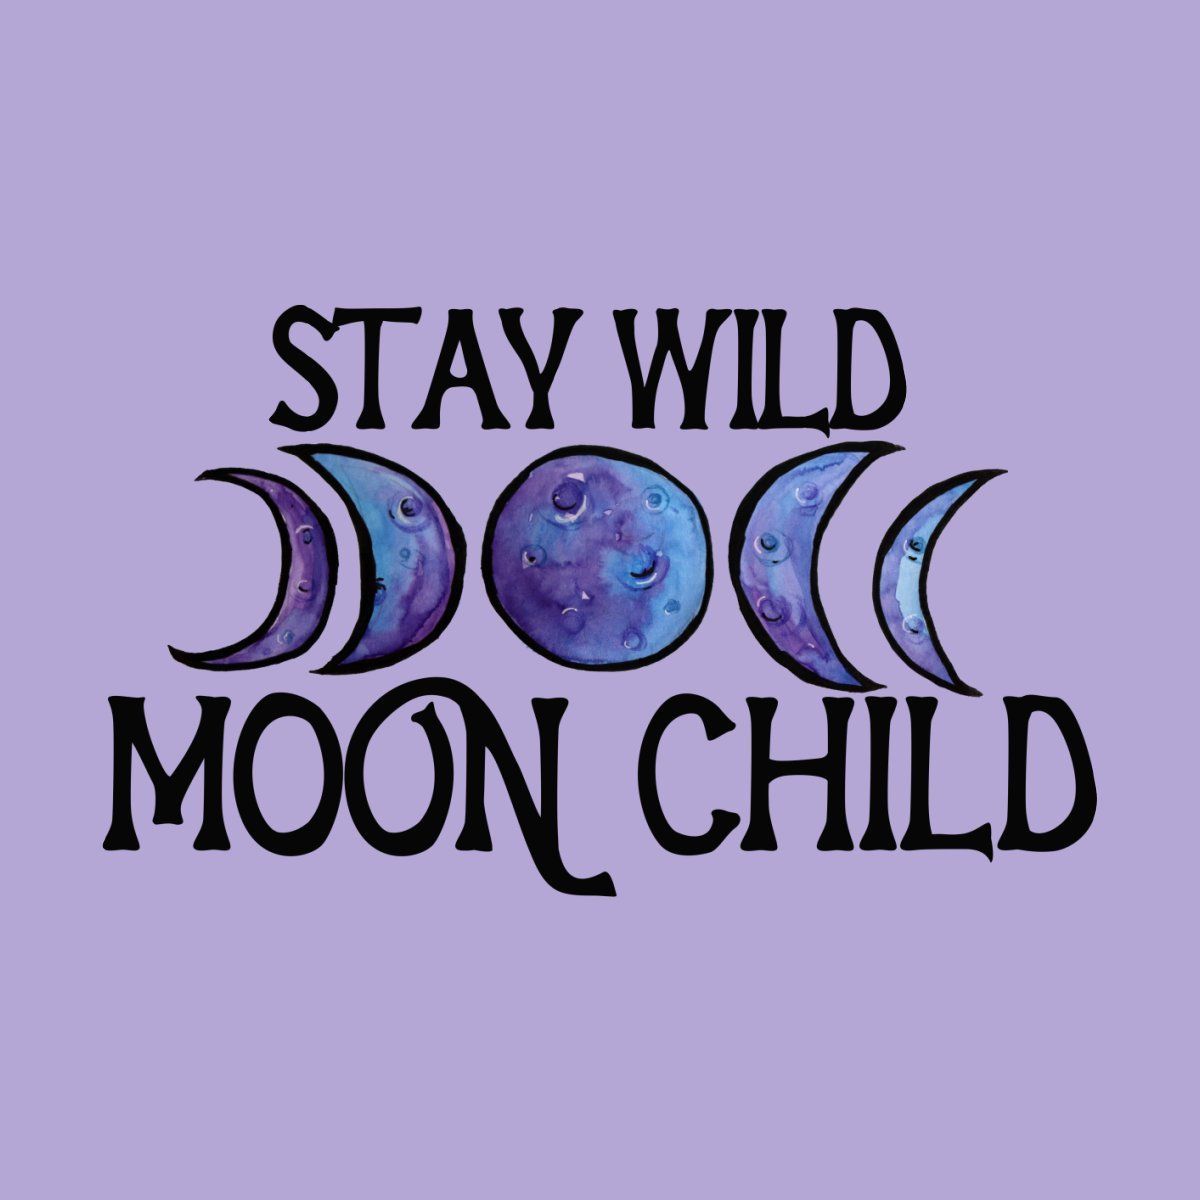 Stay Wild Moon Child. Moon child, Stay wild moon child, Wild moon